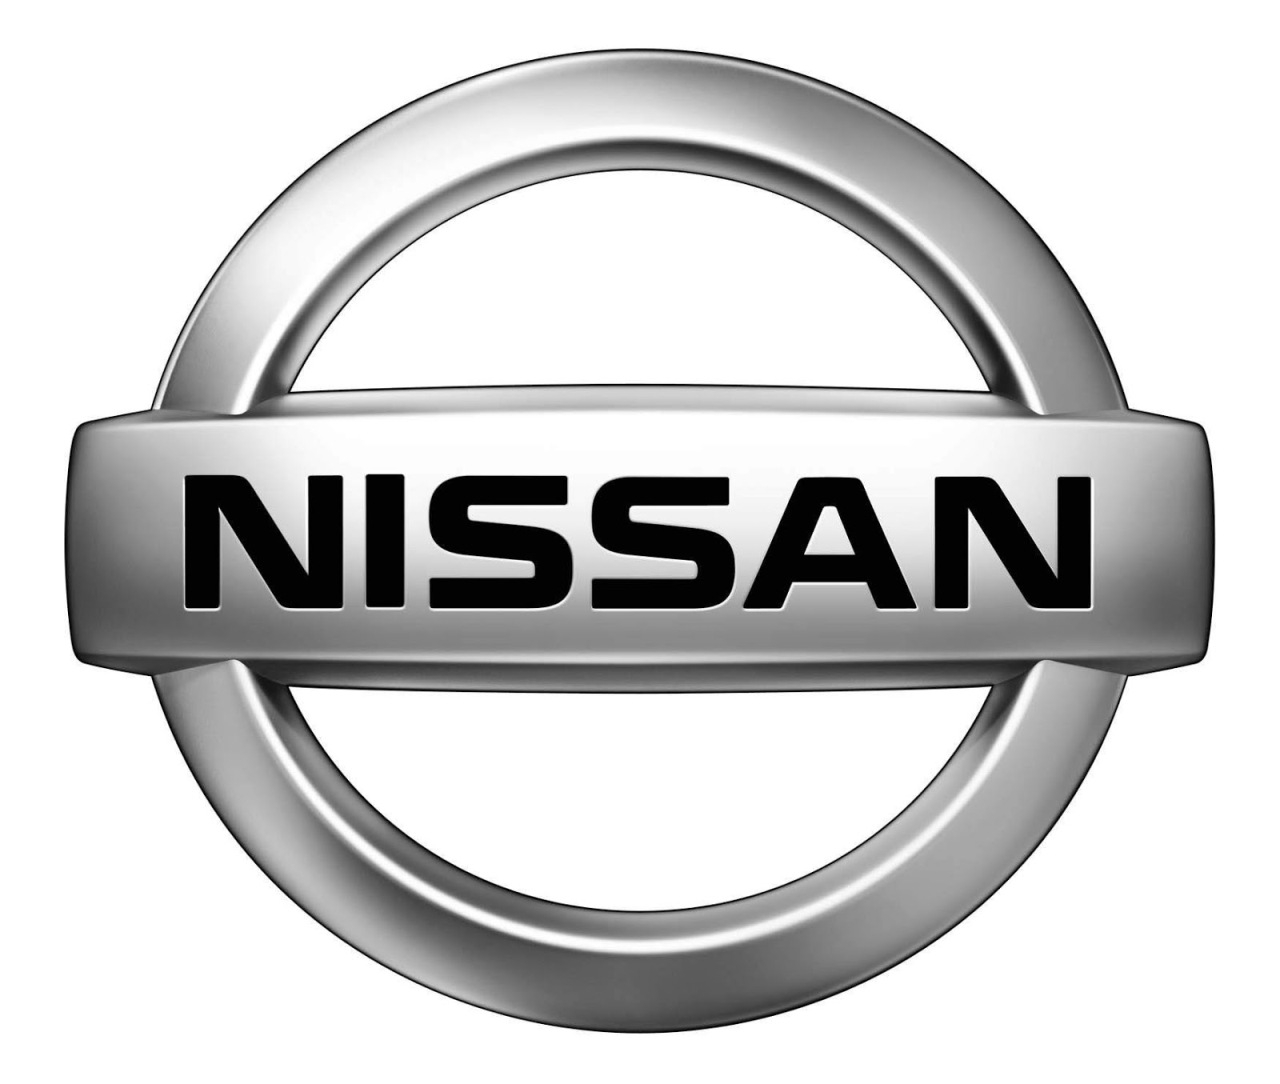 Nissan annuncia i risultati finanziari del primo semestre dell’anno fiscale 2013